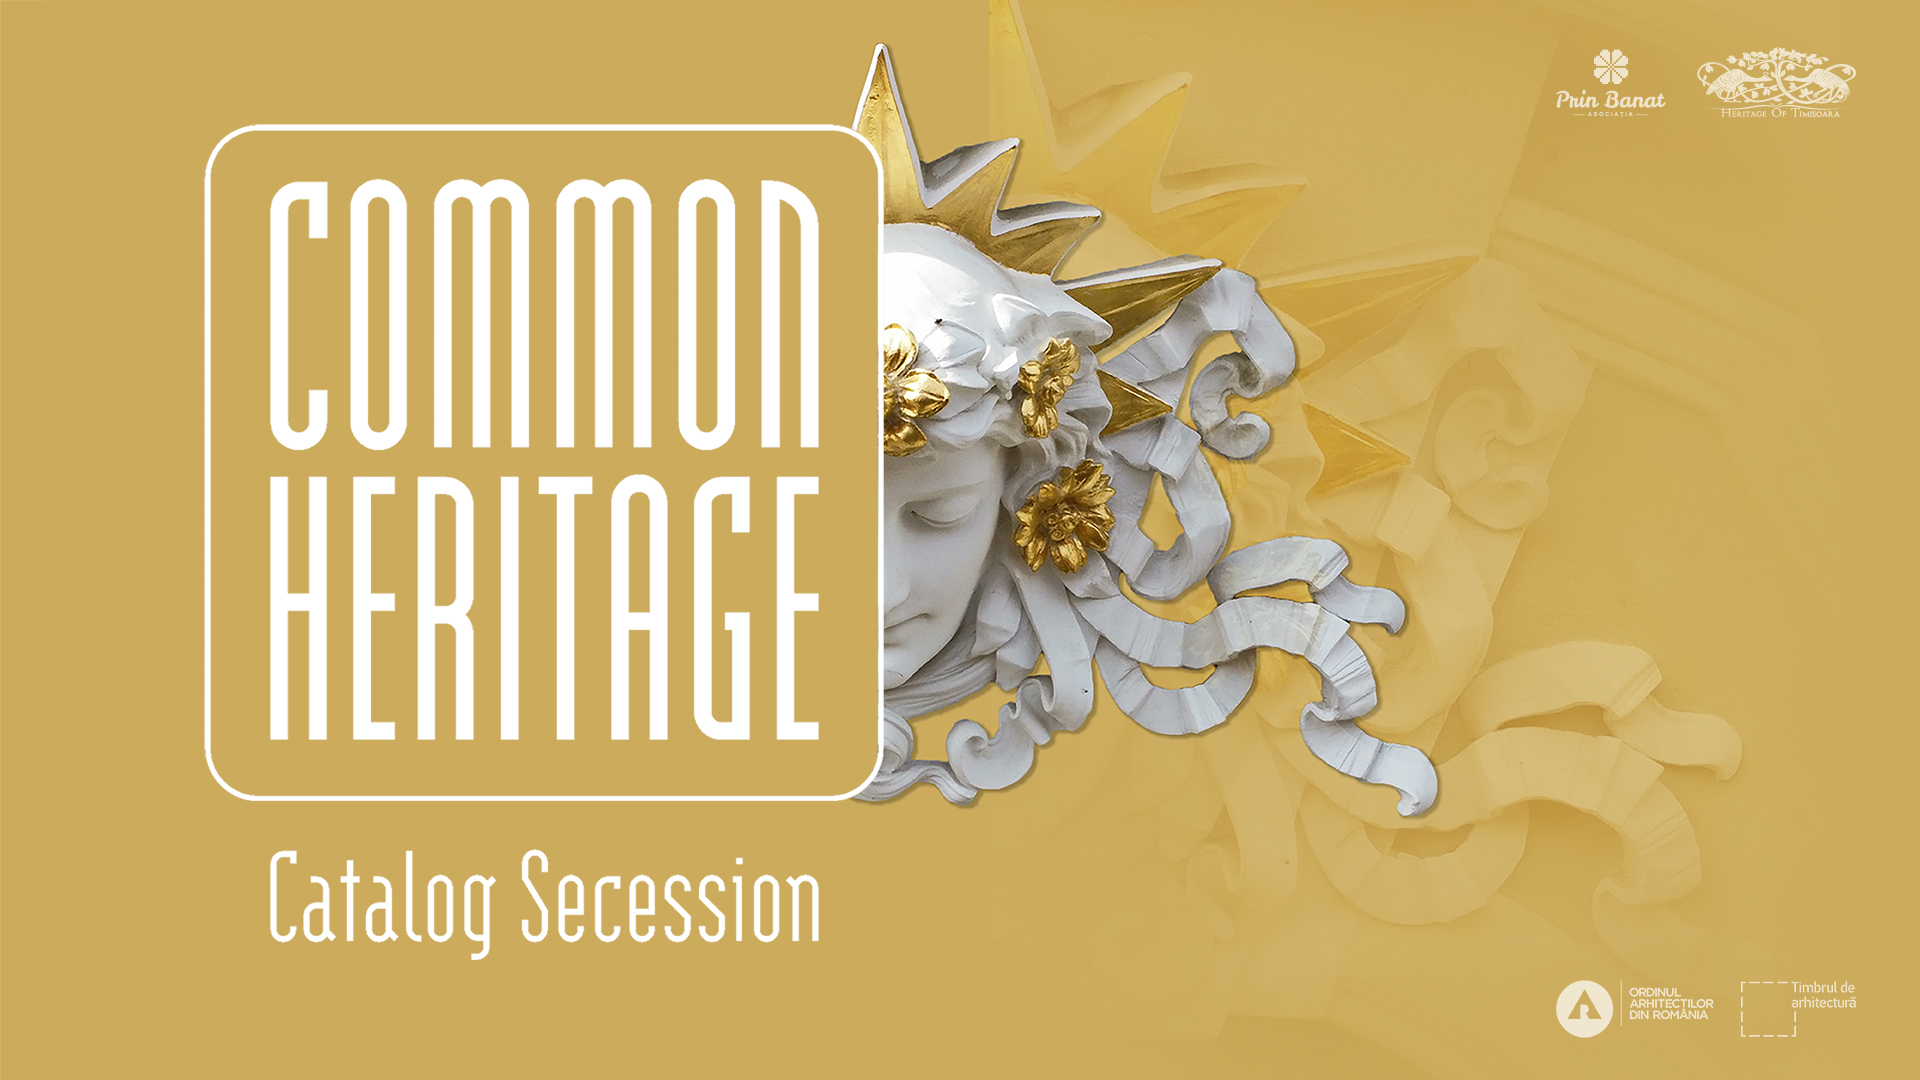 Asociația Prin Banat continuă proiectul Common Heritage și va lansa Catalogul Secession